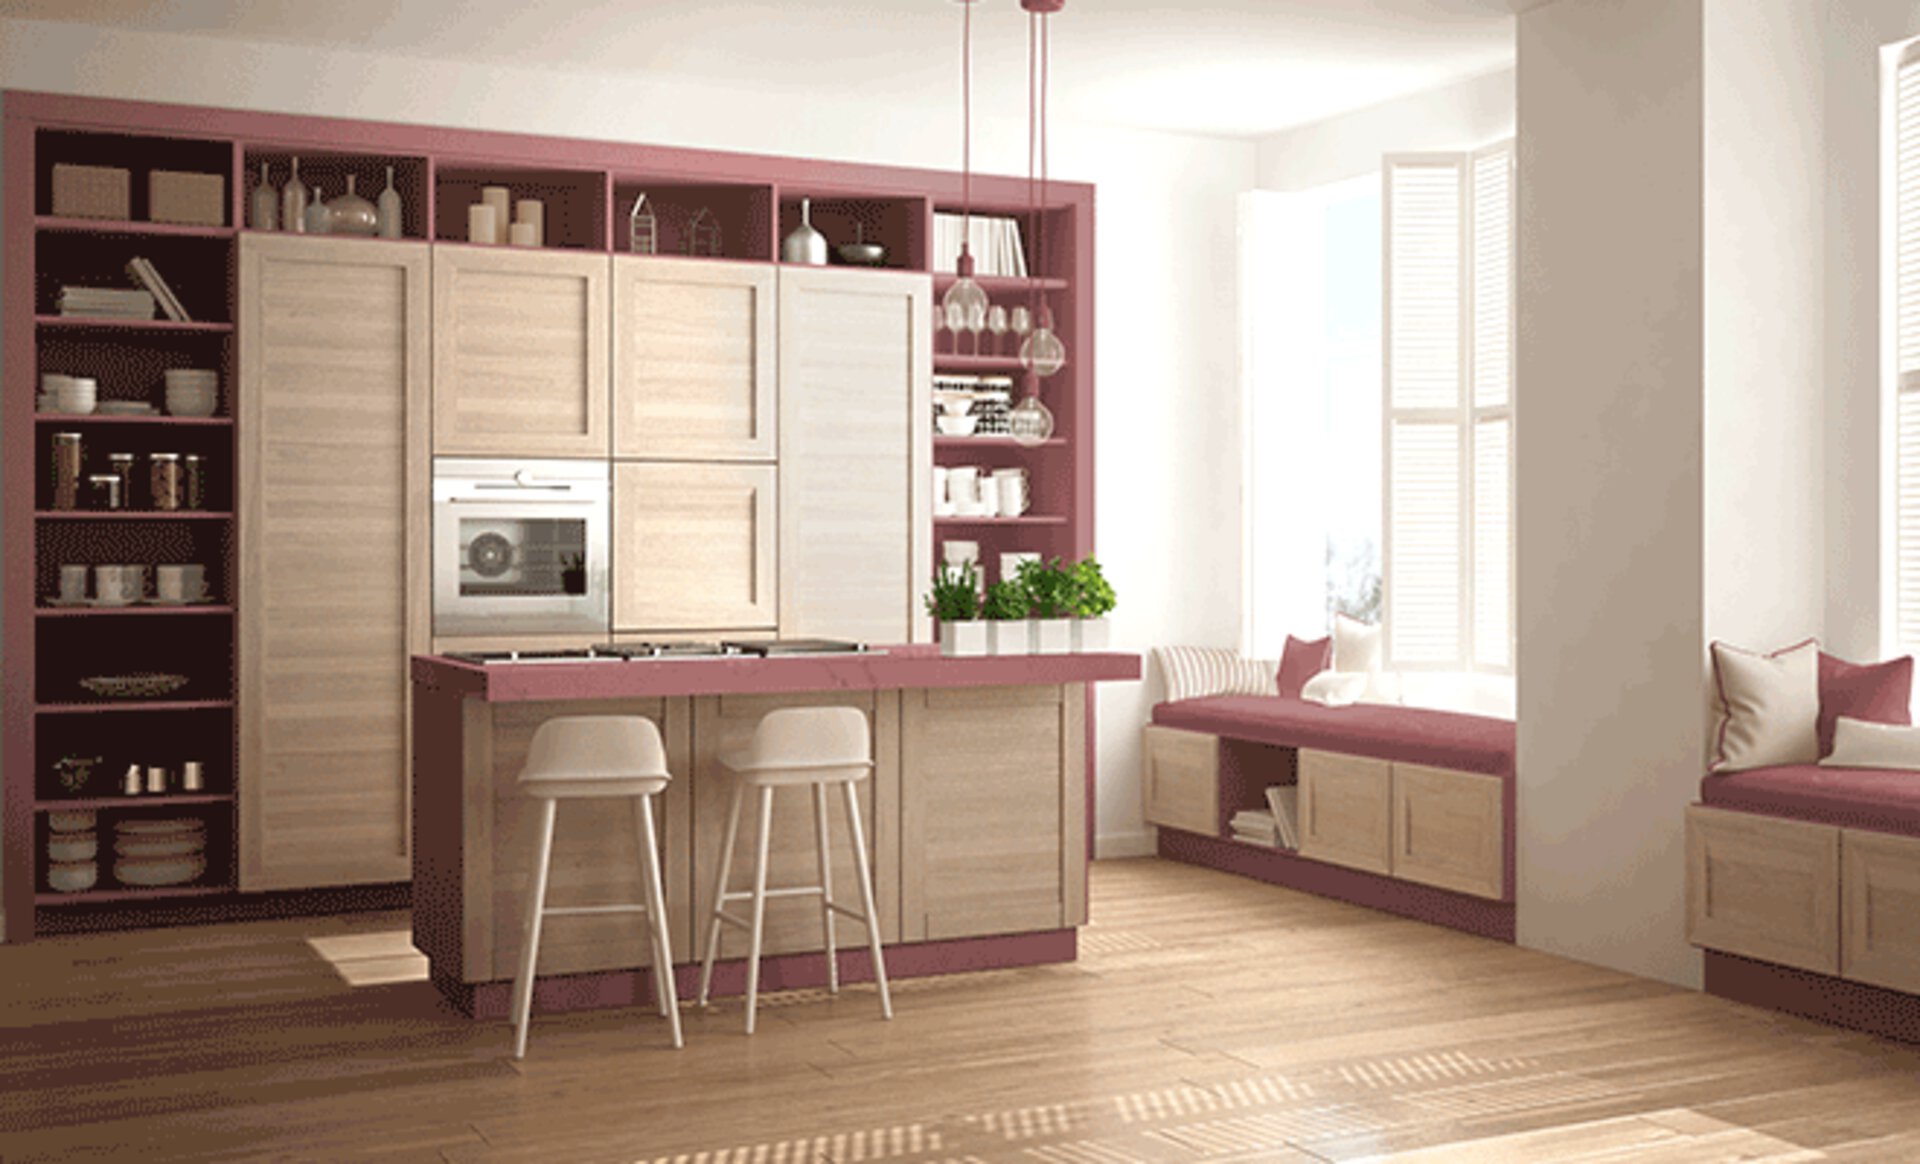 Moderne Küche mit Kücheninsel in Pastellfarben